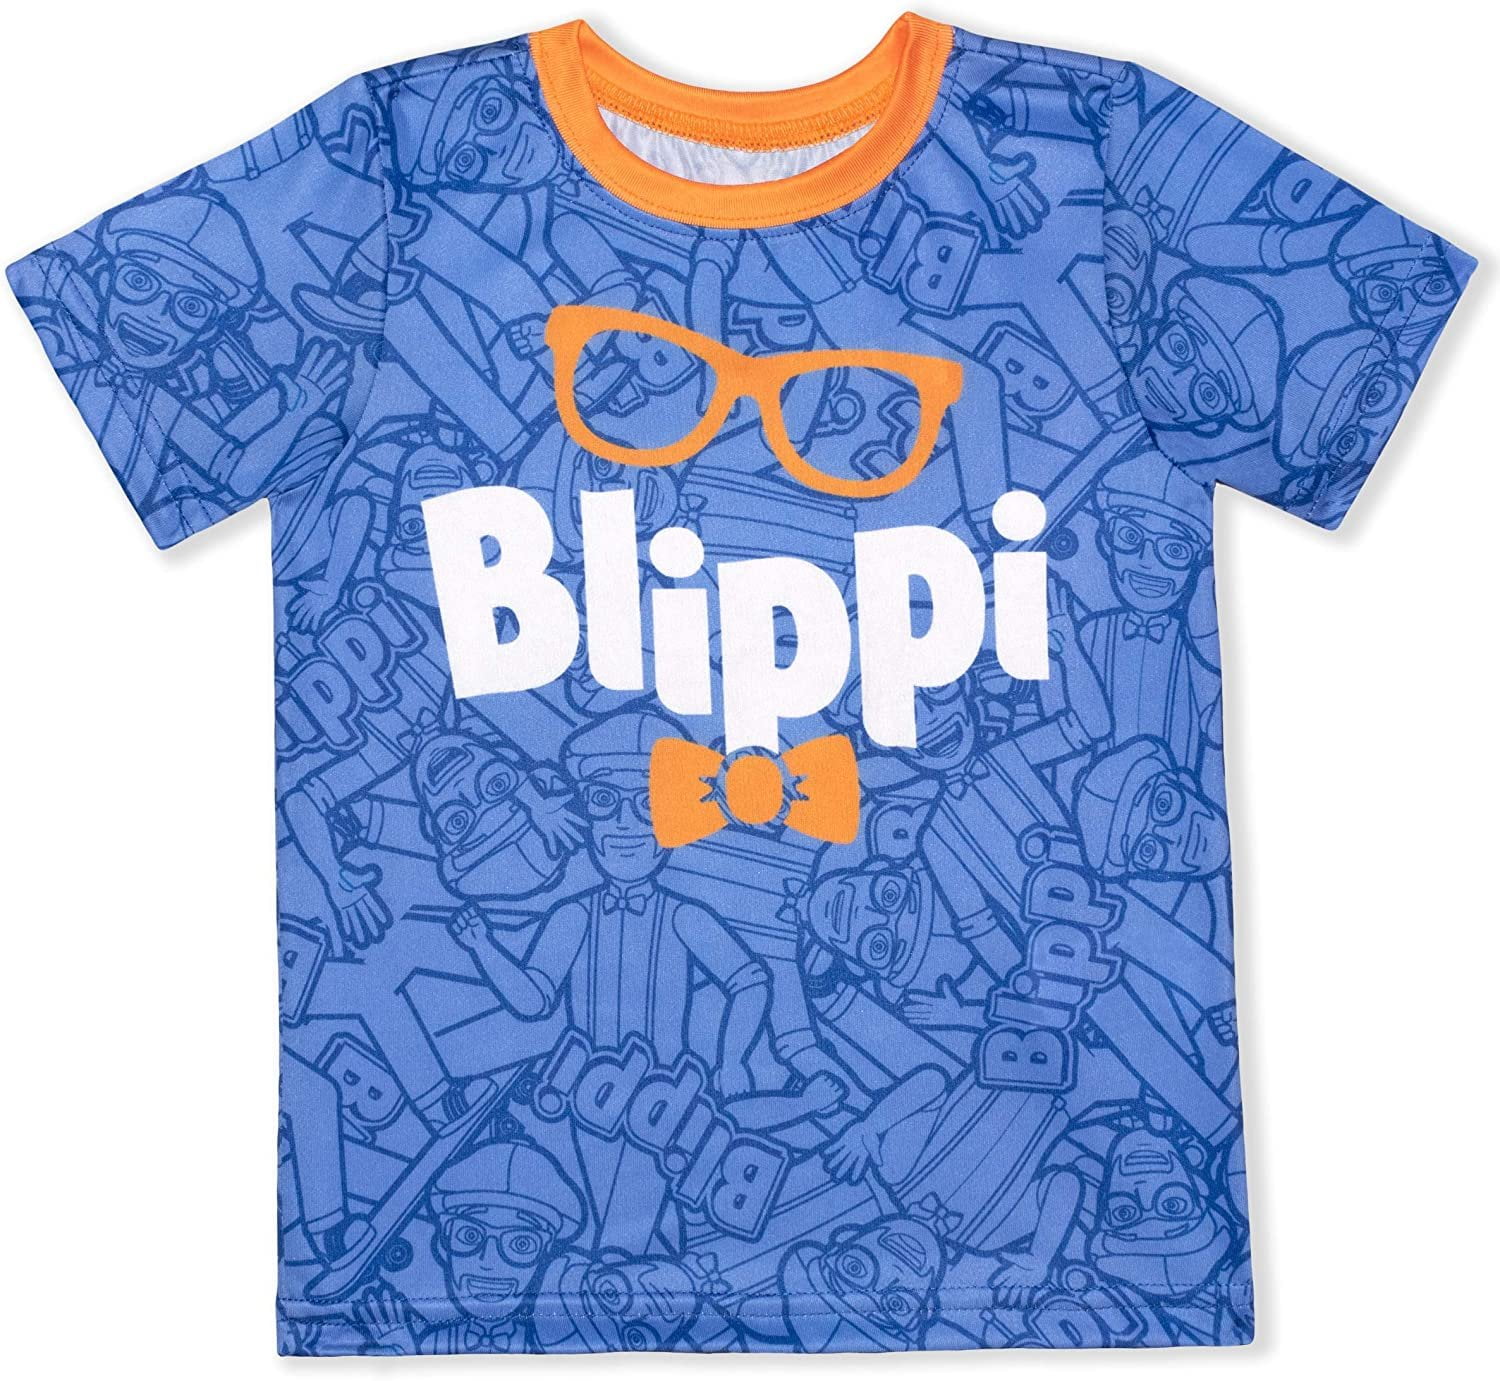 Blippi Boys T-Shirt